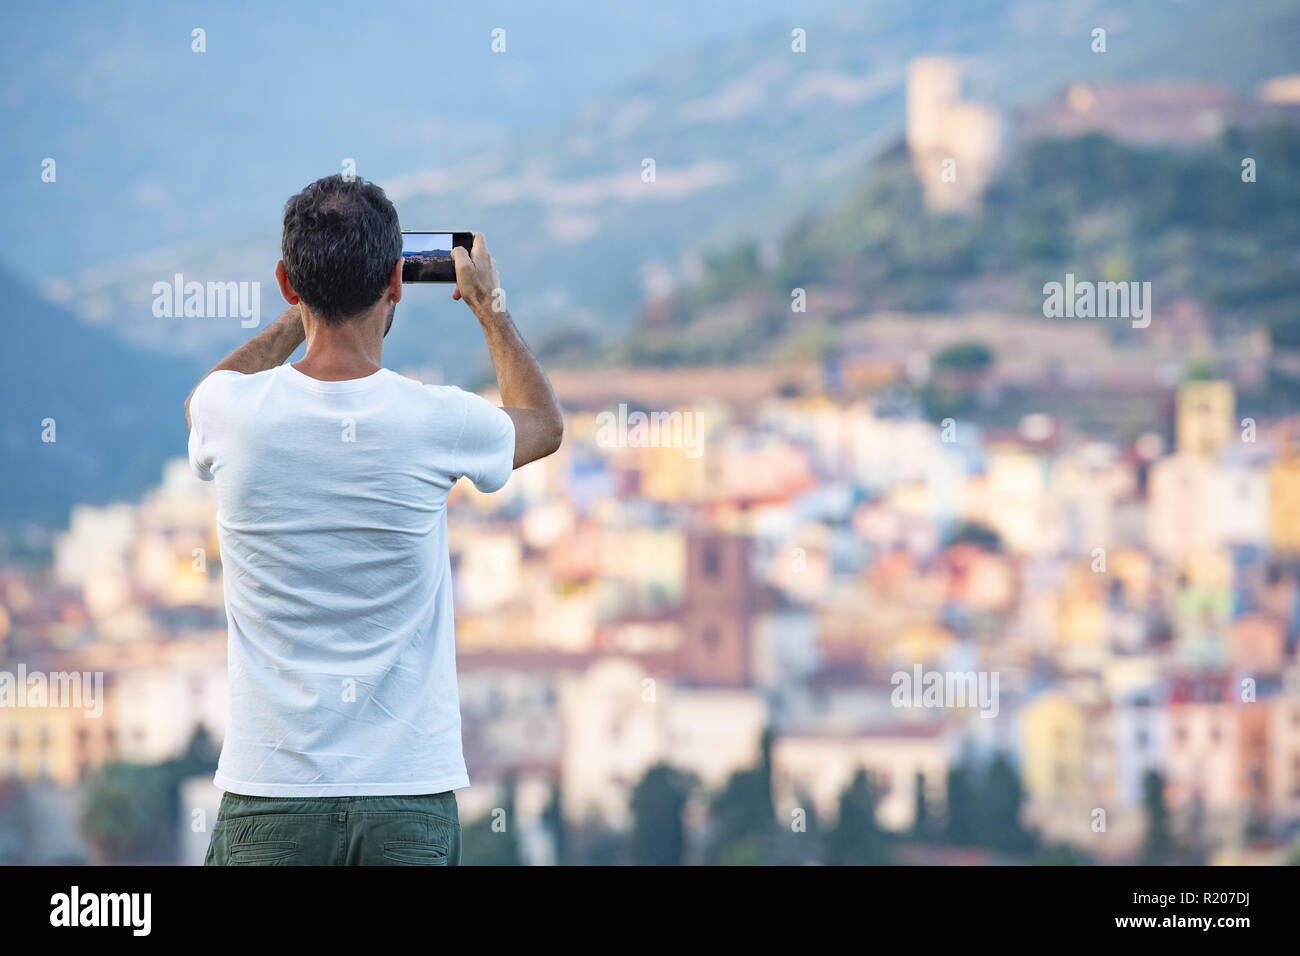 Un turista è di scattare una foto con il suo telefono cellulare al bello e colorato villaggio di Bosa si trova nel nord-ovest della Sardegna, Italia. Foto Stock